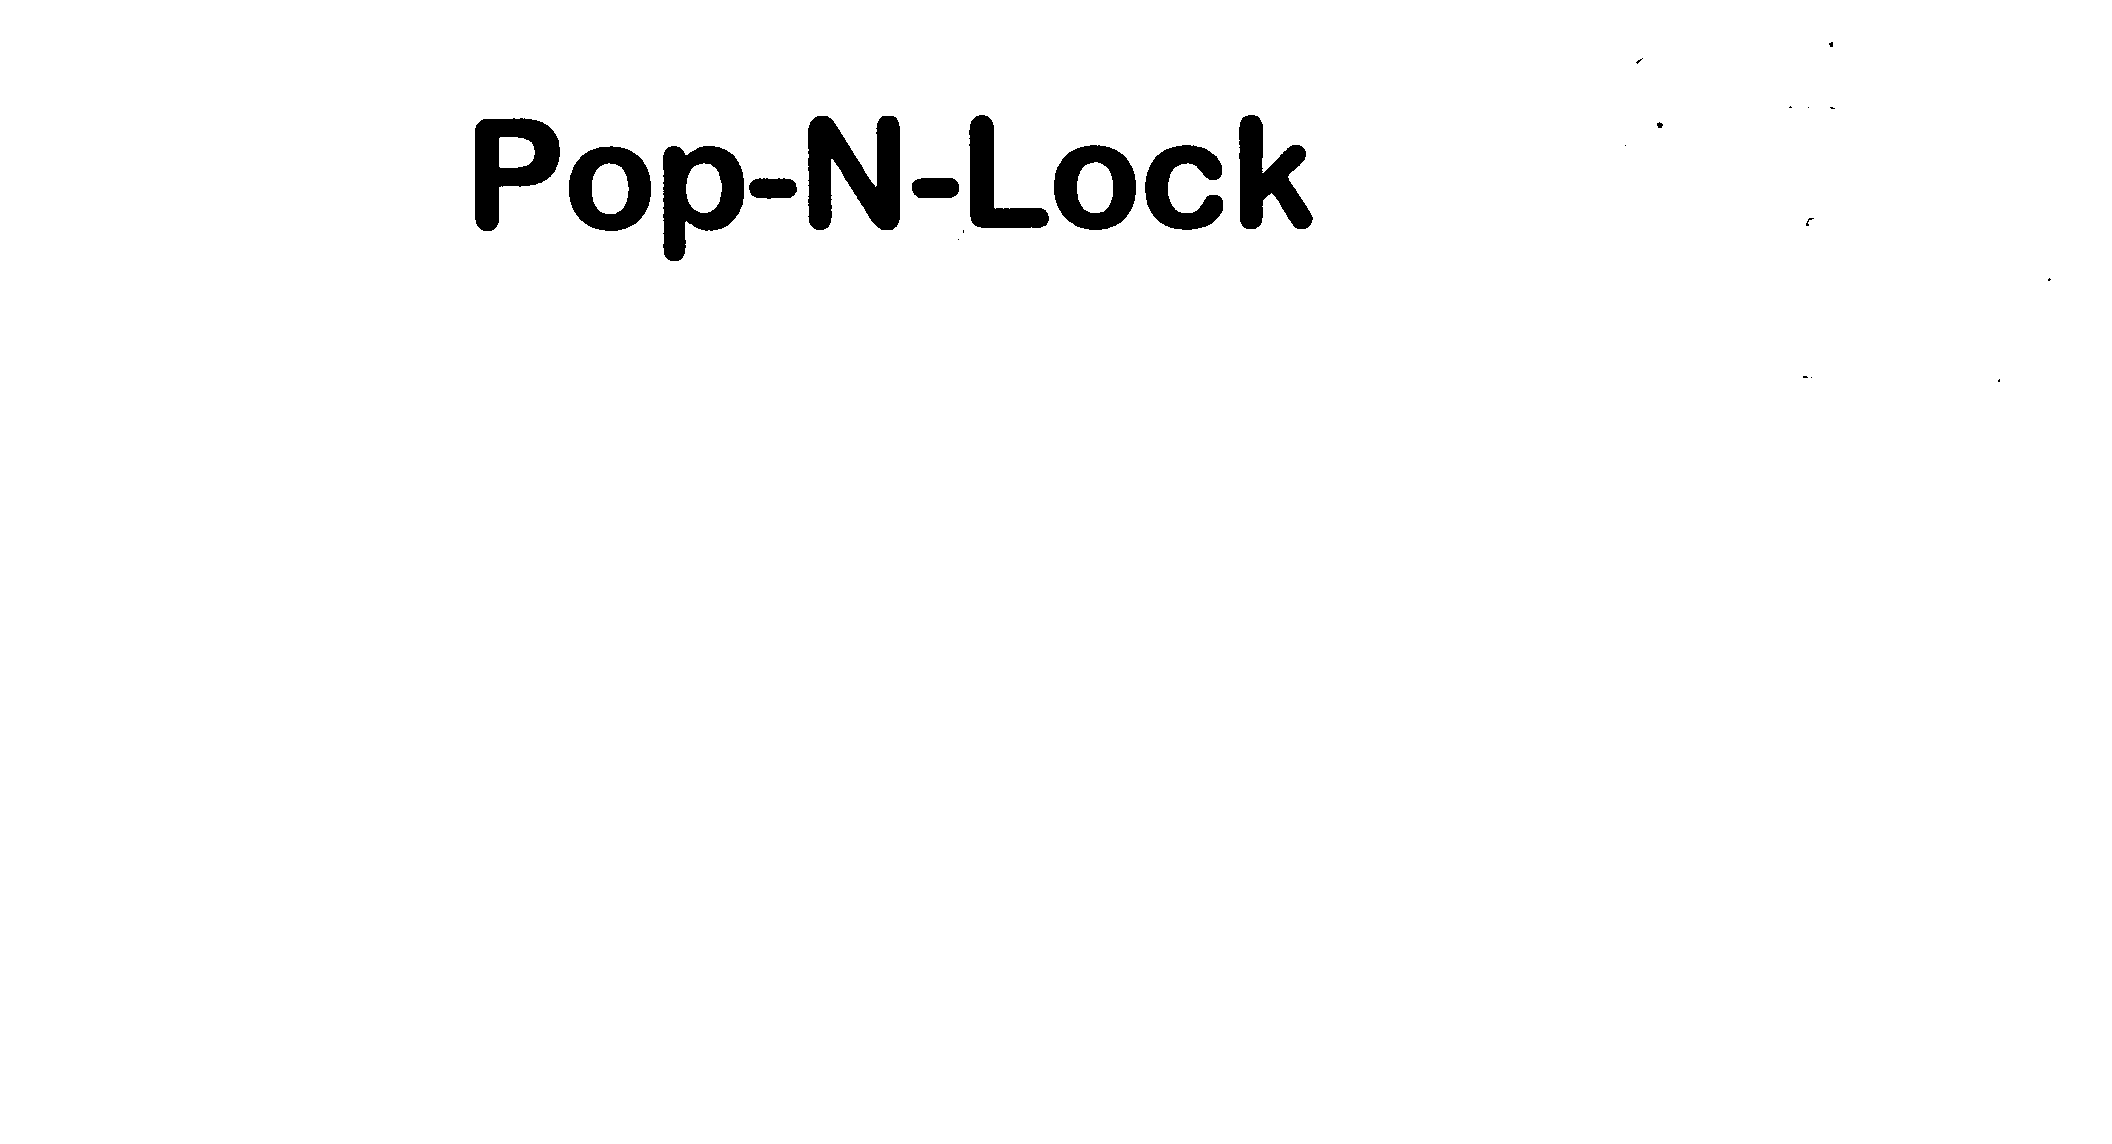  POP-N-LOCK